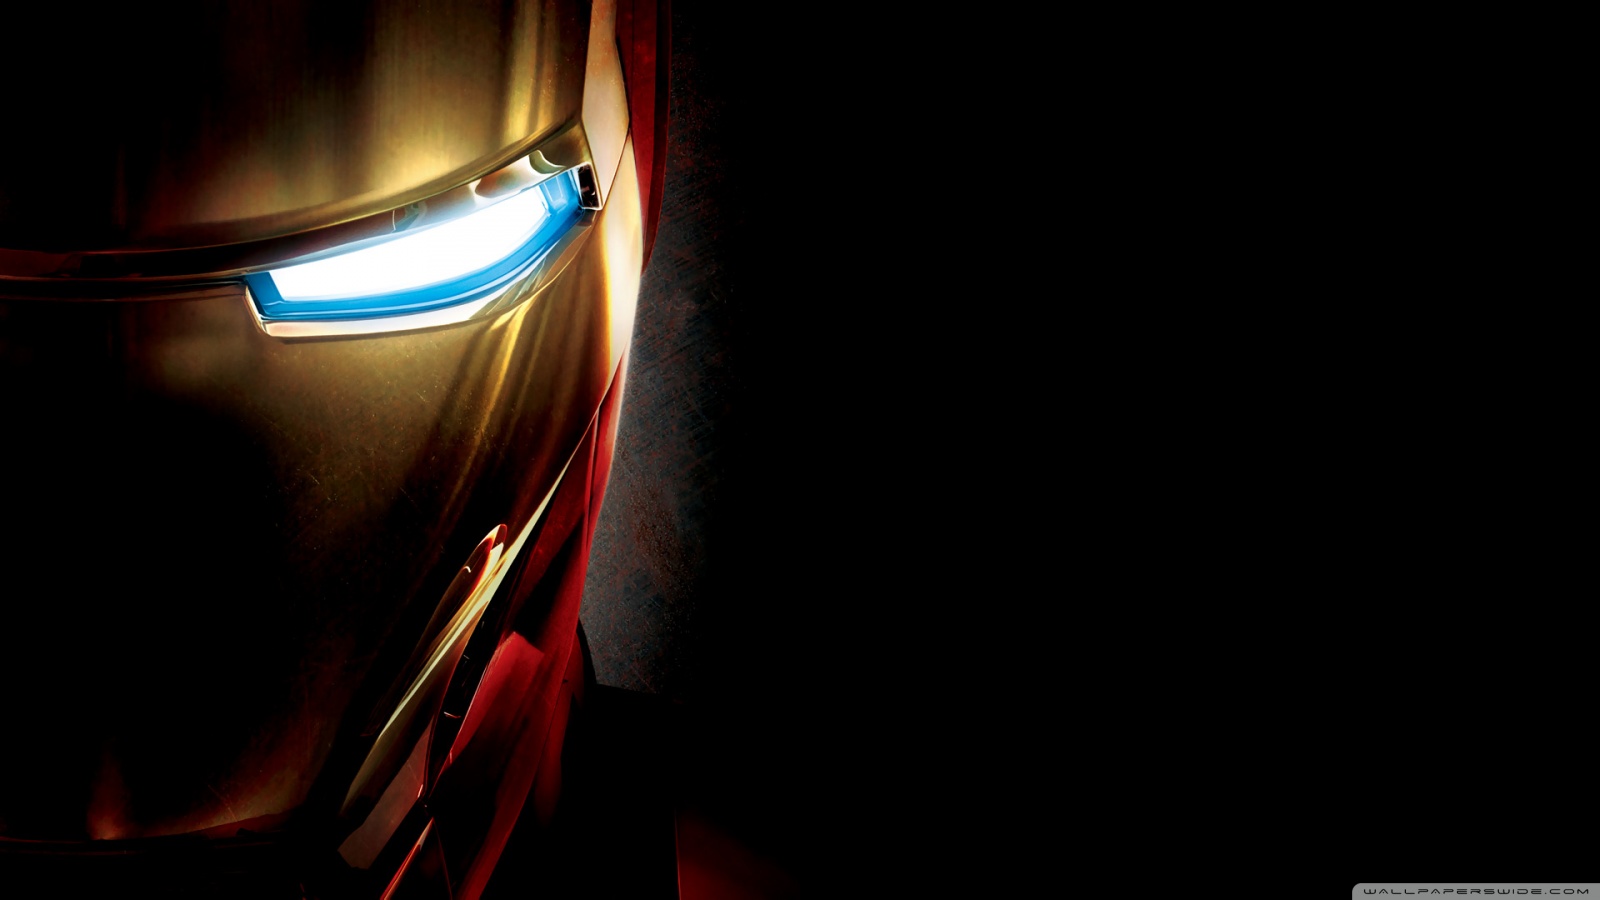 Iron Man Eye 4K HD Desktop Wallpaper For 4K Ultra HD TV Wide